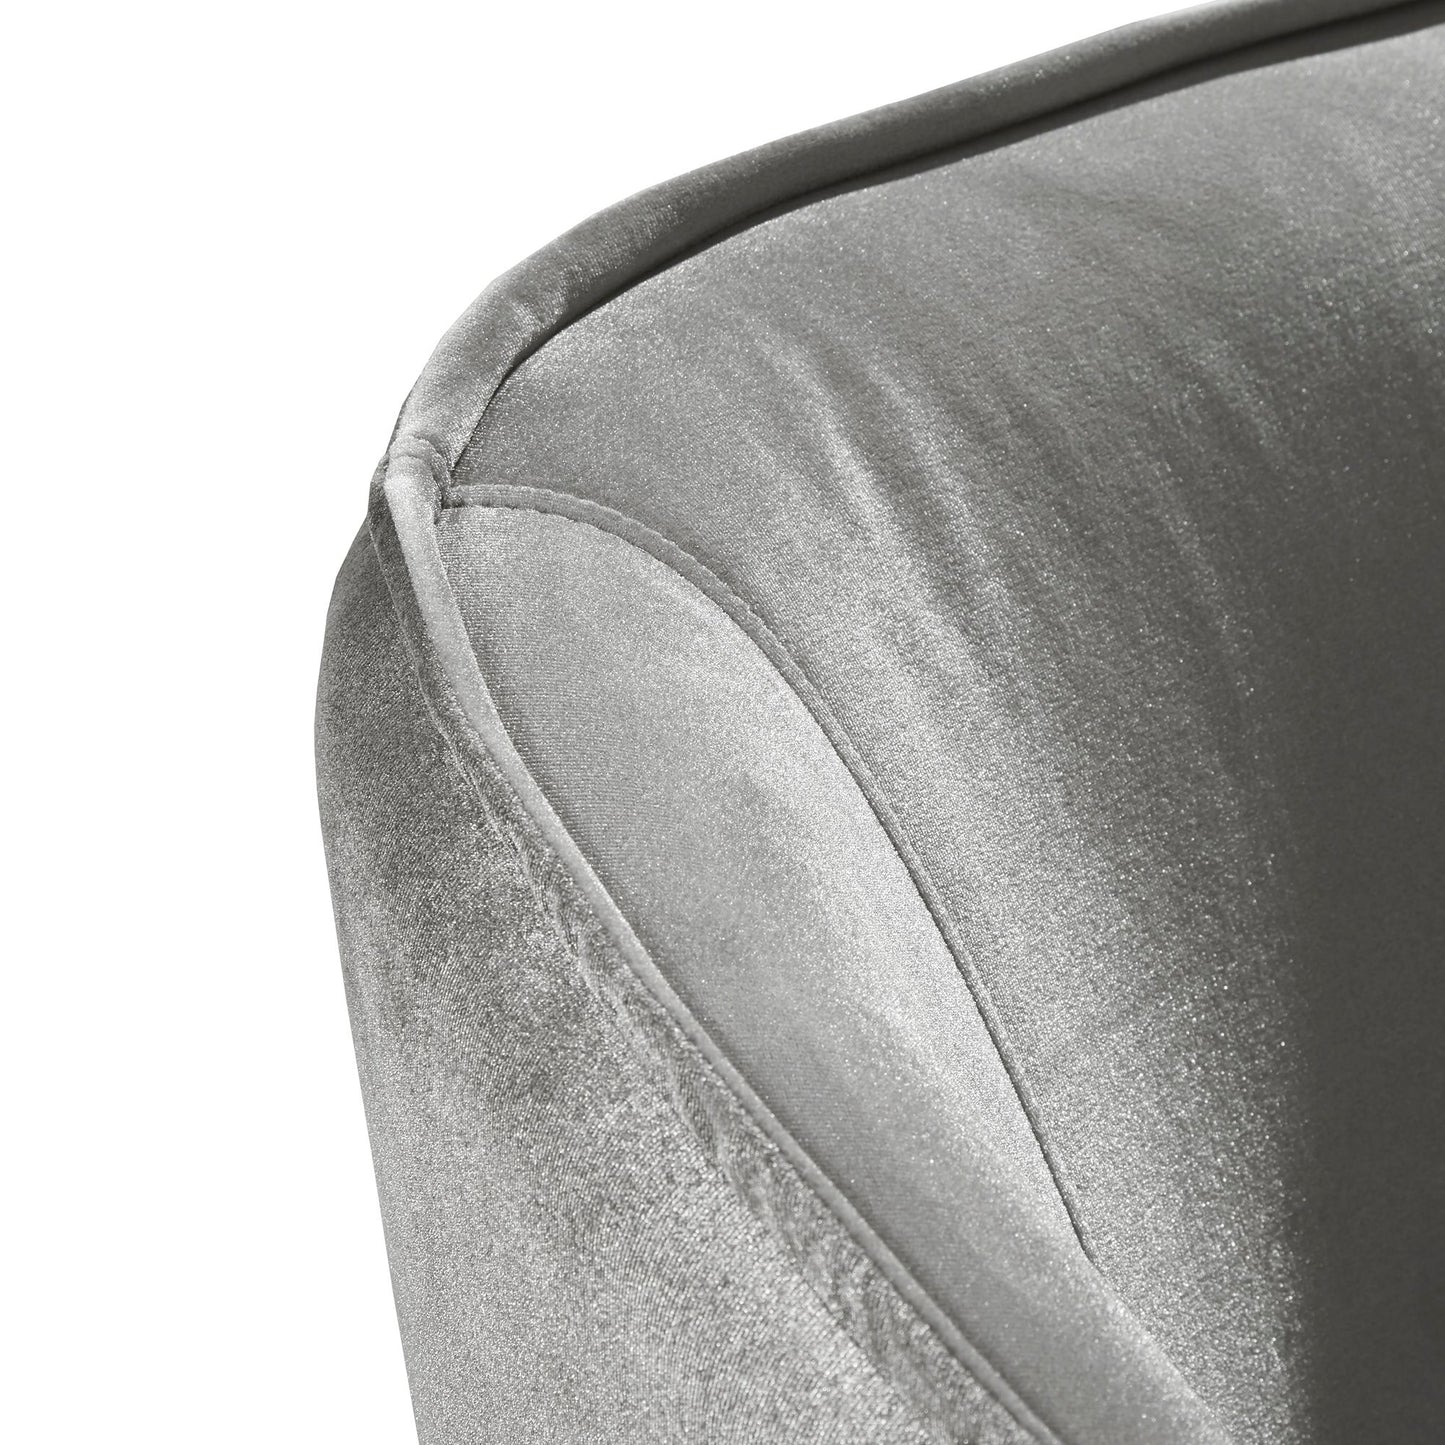 Velvet Barrel Back Acrylic Leg Accent Chair - Silver Velvet